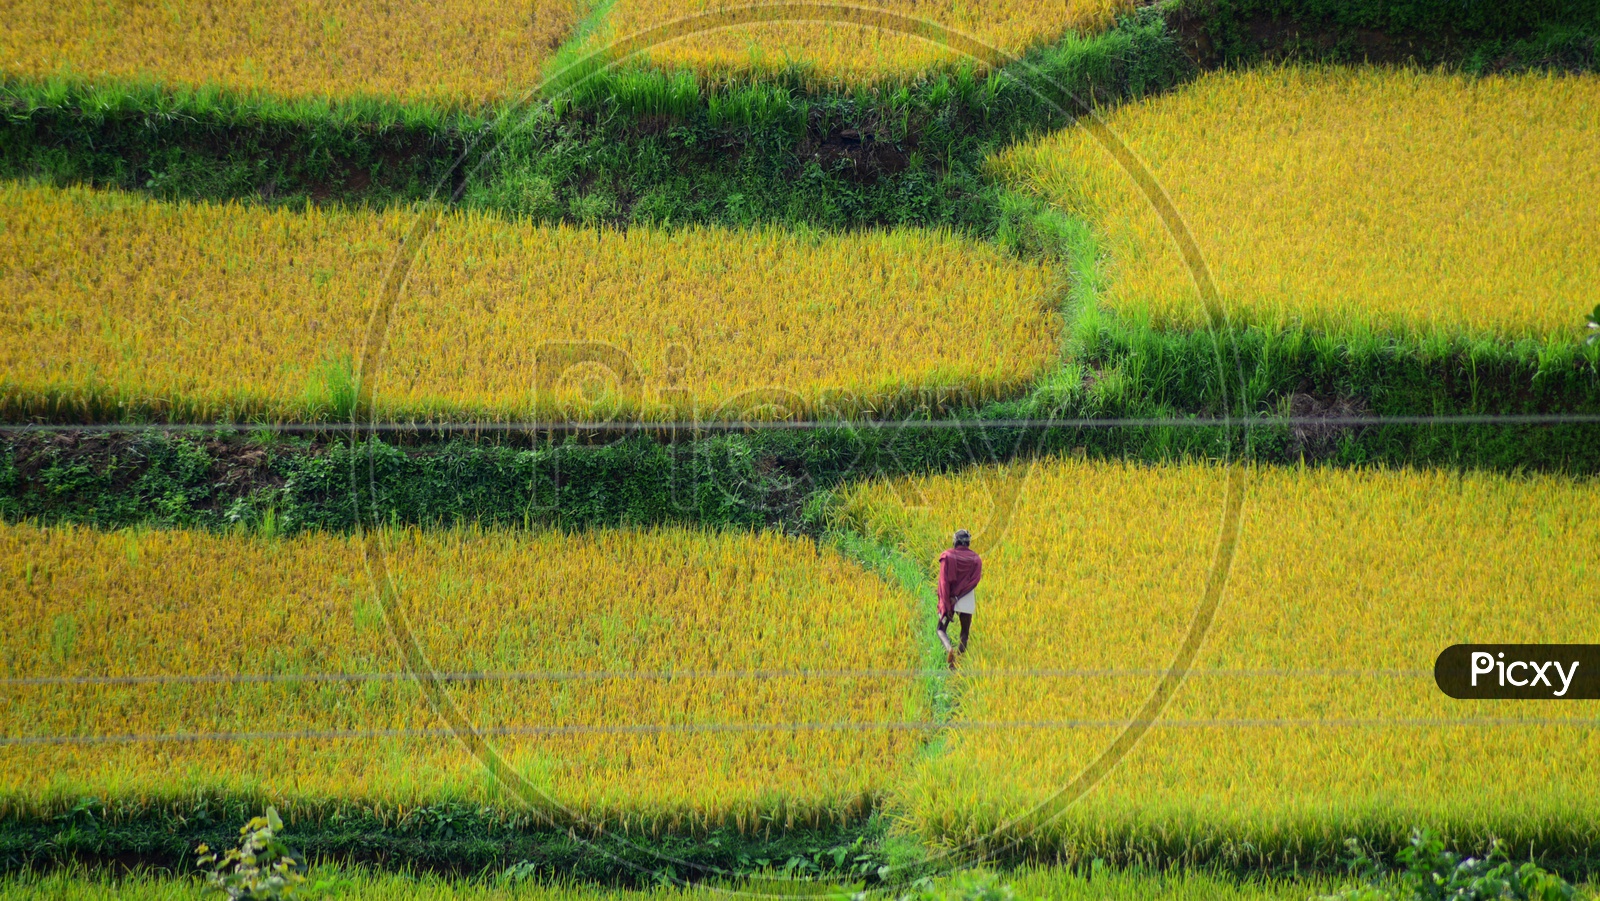 A farmer walking in the paddy fields